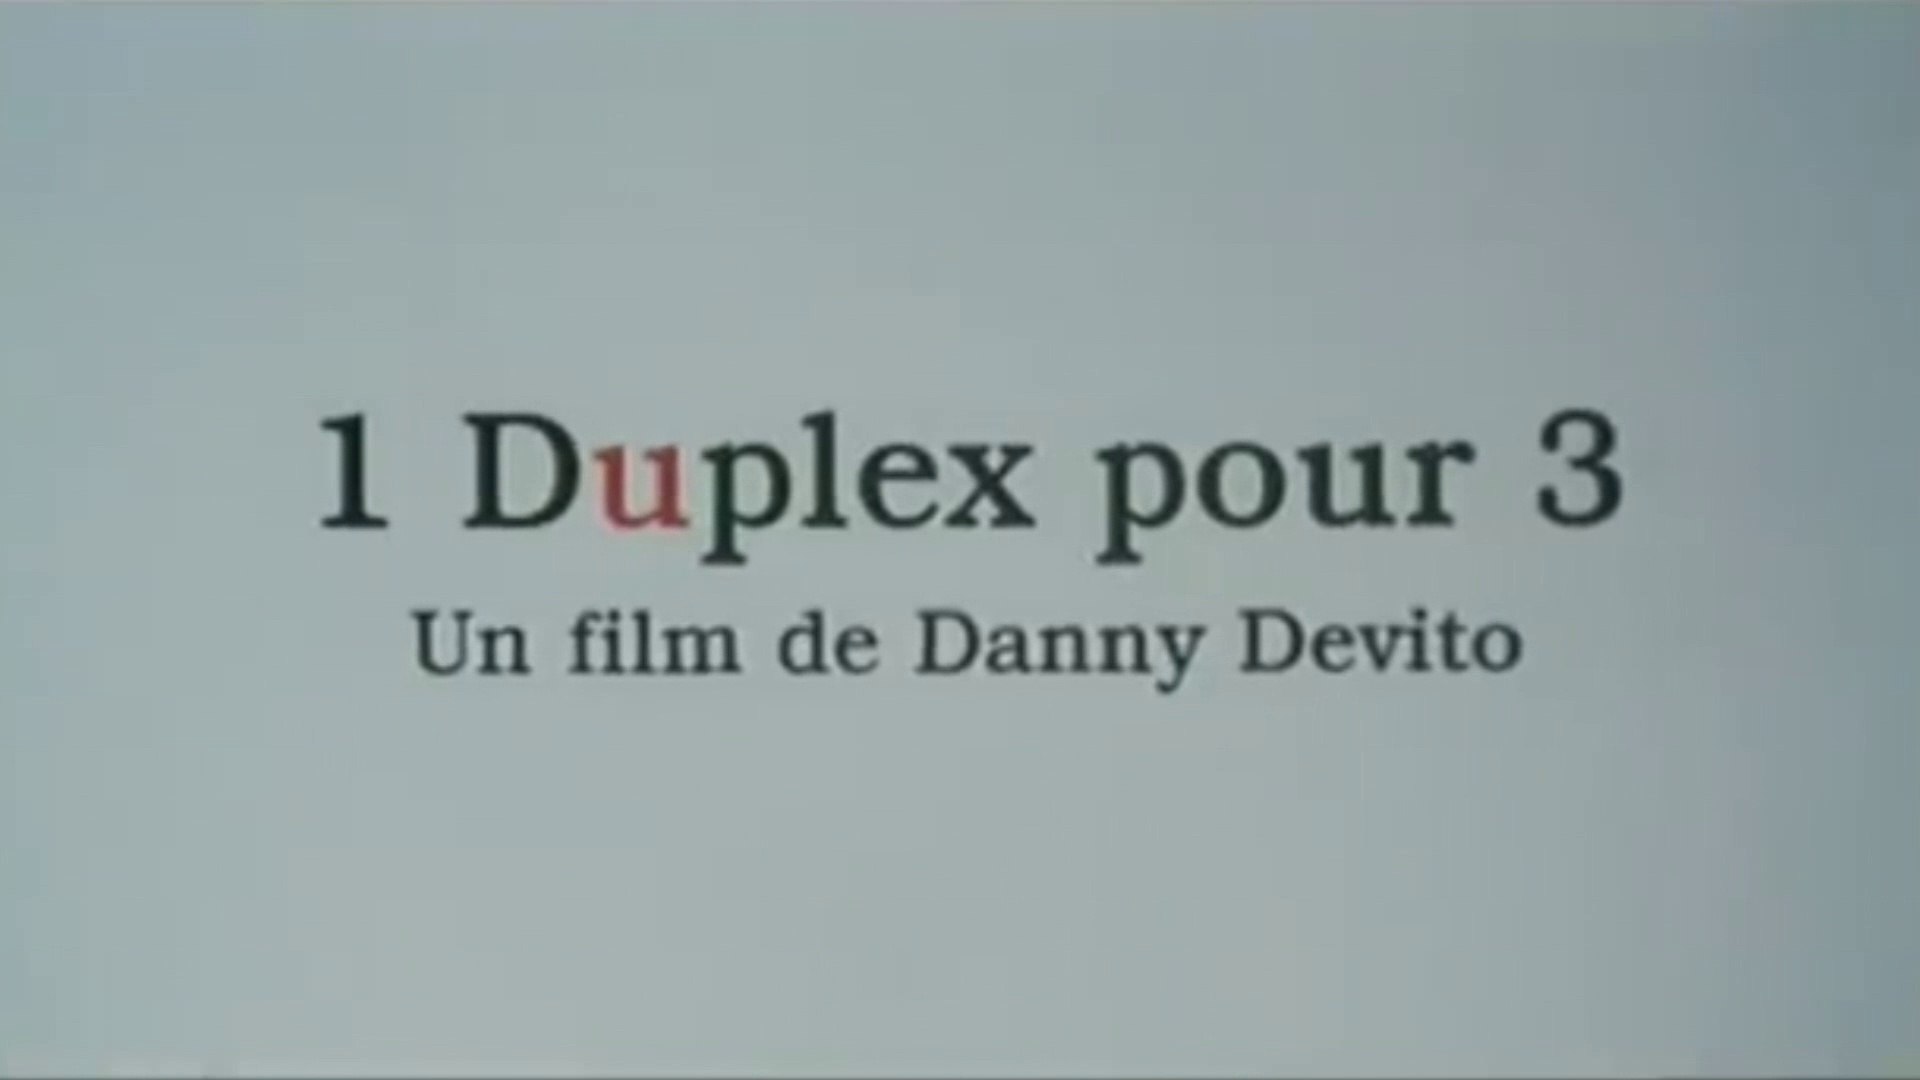 UN DUPLEX POUR 3 (2003) Bande Annonce VF - HQ - Vidéo Dailymotion